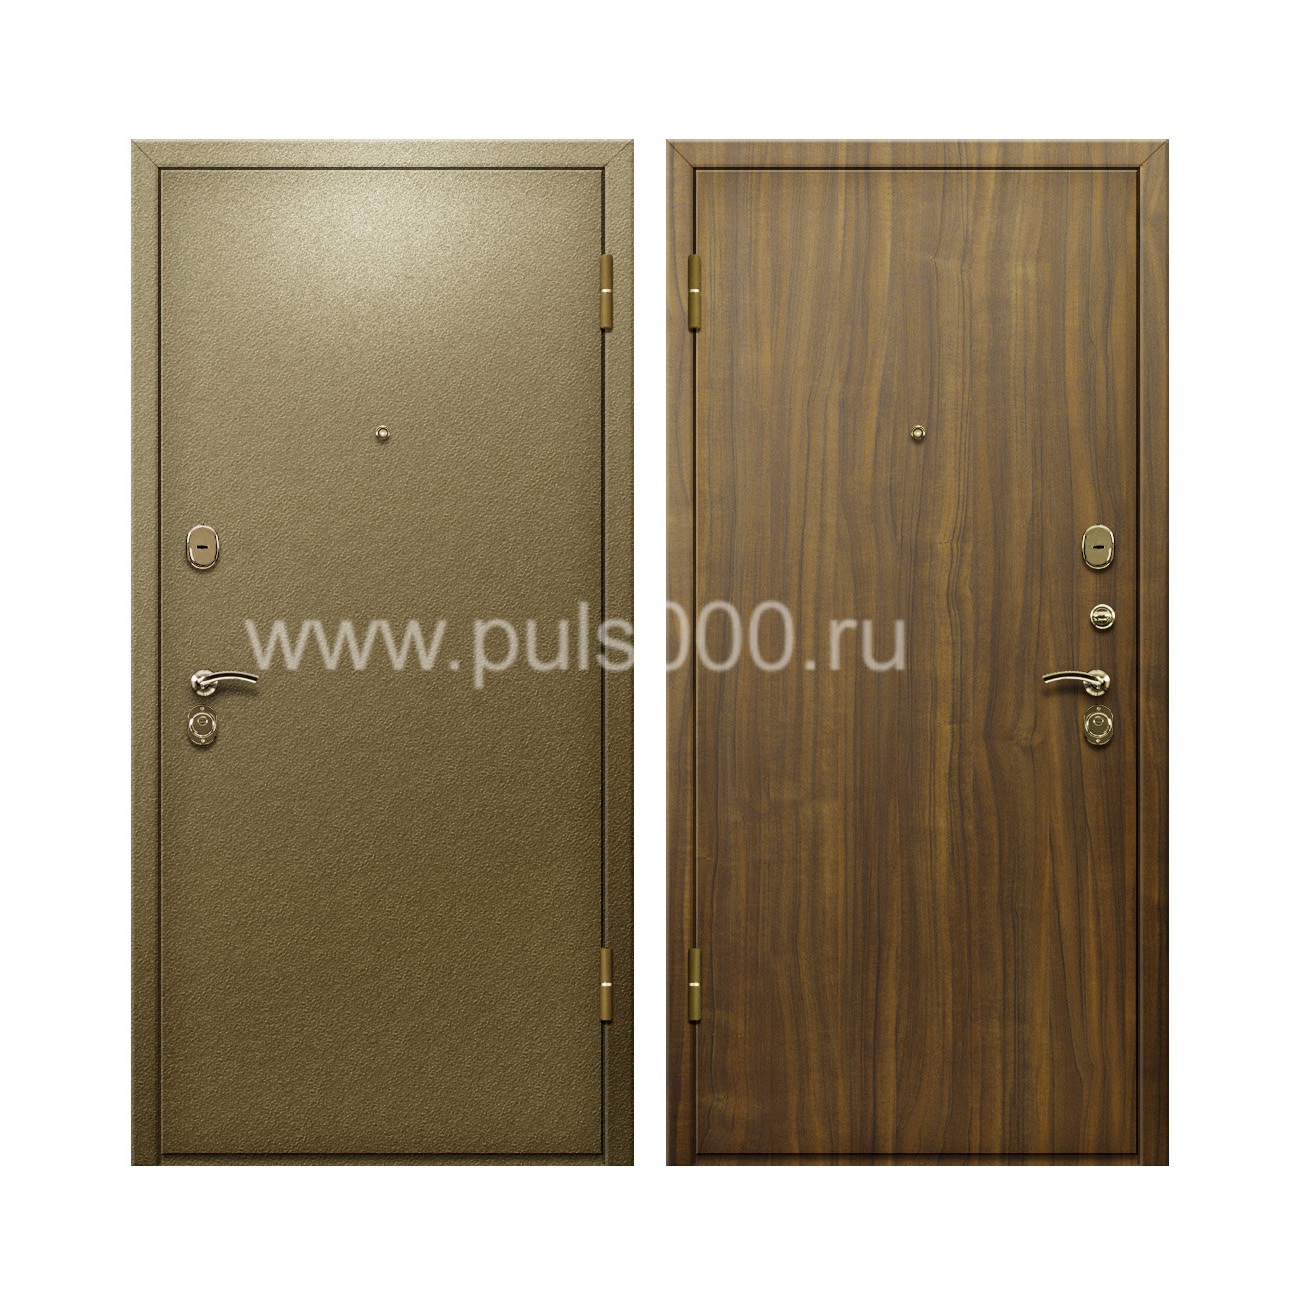 Темная входная дверь порошковое покрытие и ламинат PR-63, цена 18 000  руб.